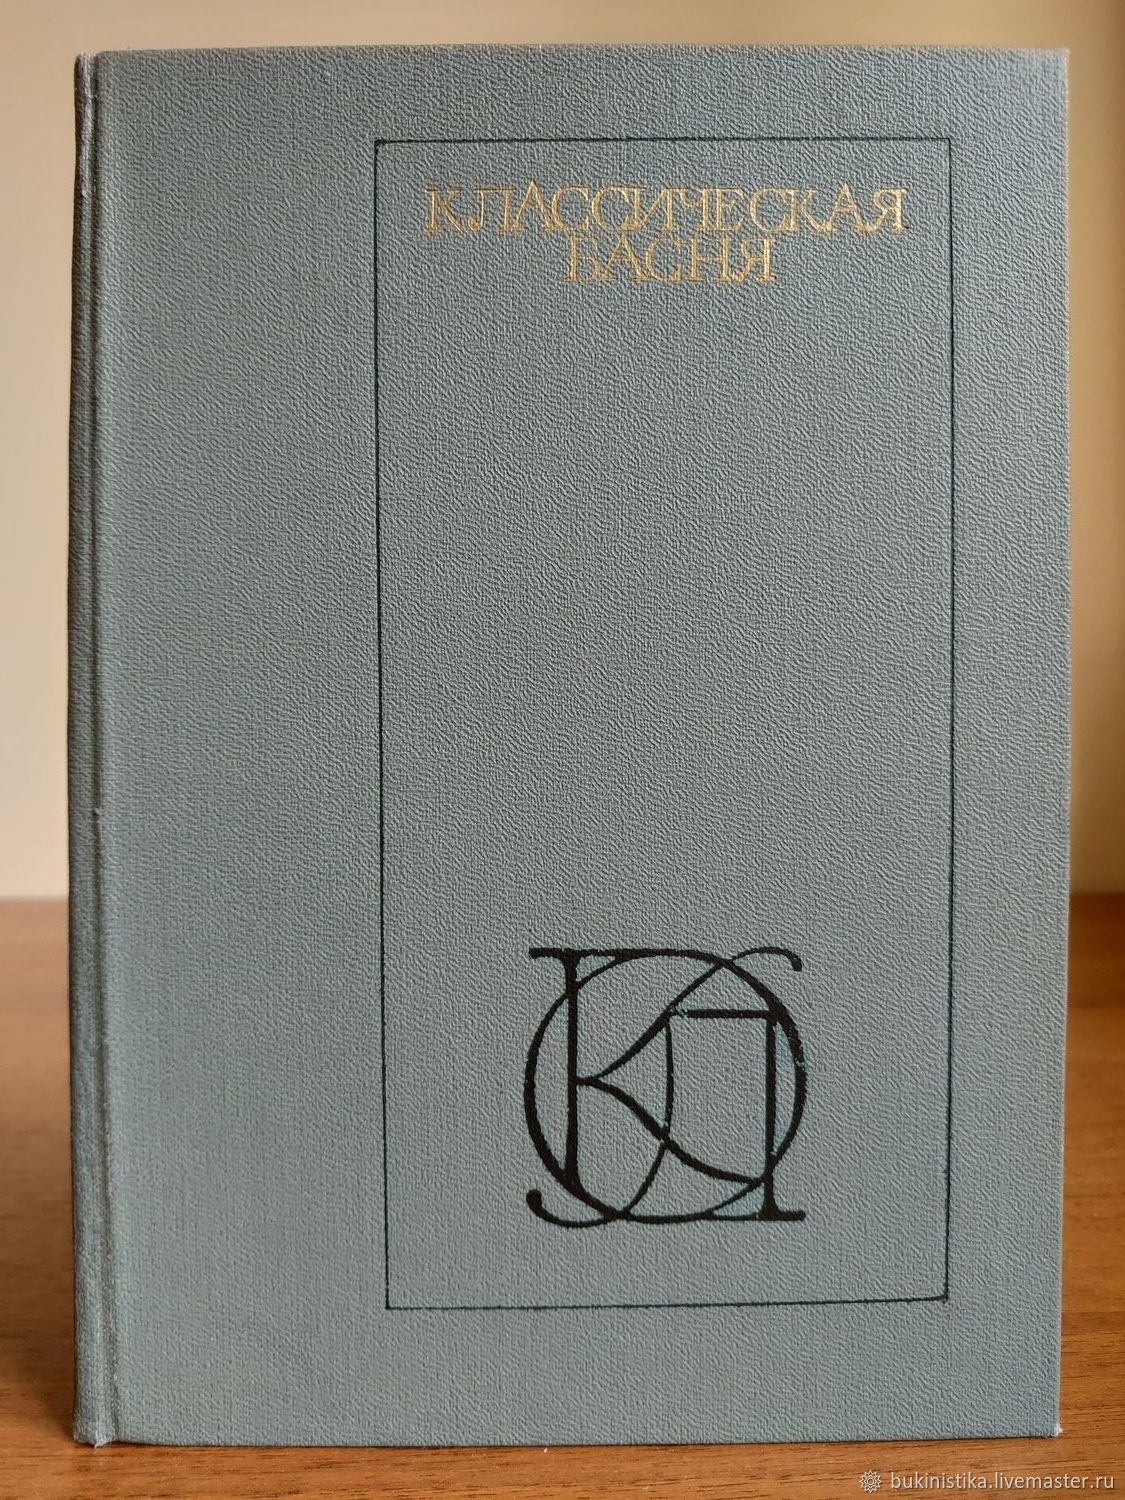 Книга 1981 года. Классическая басня книга. 1981 Книга. Книга классическая басня 1981 год. Бабрий фото.